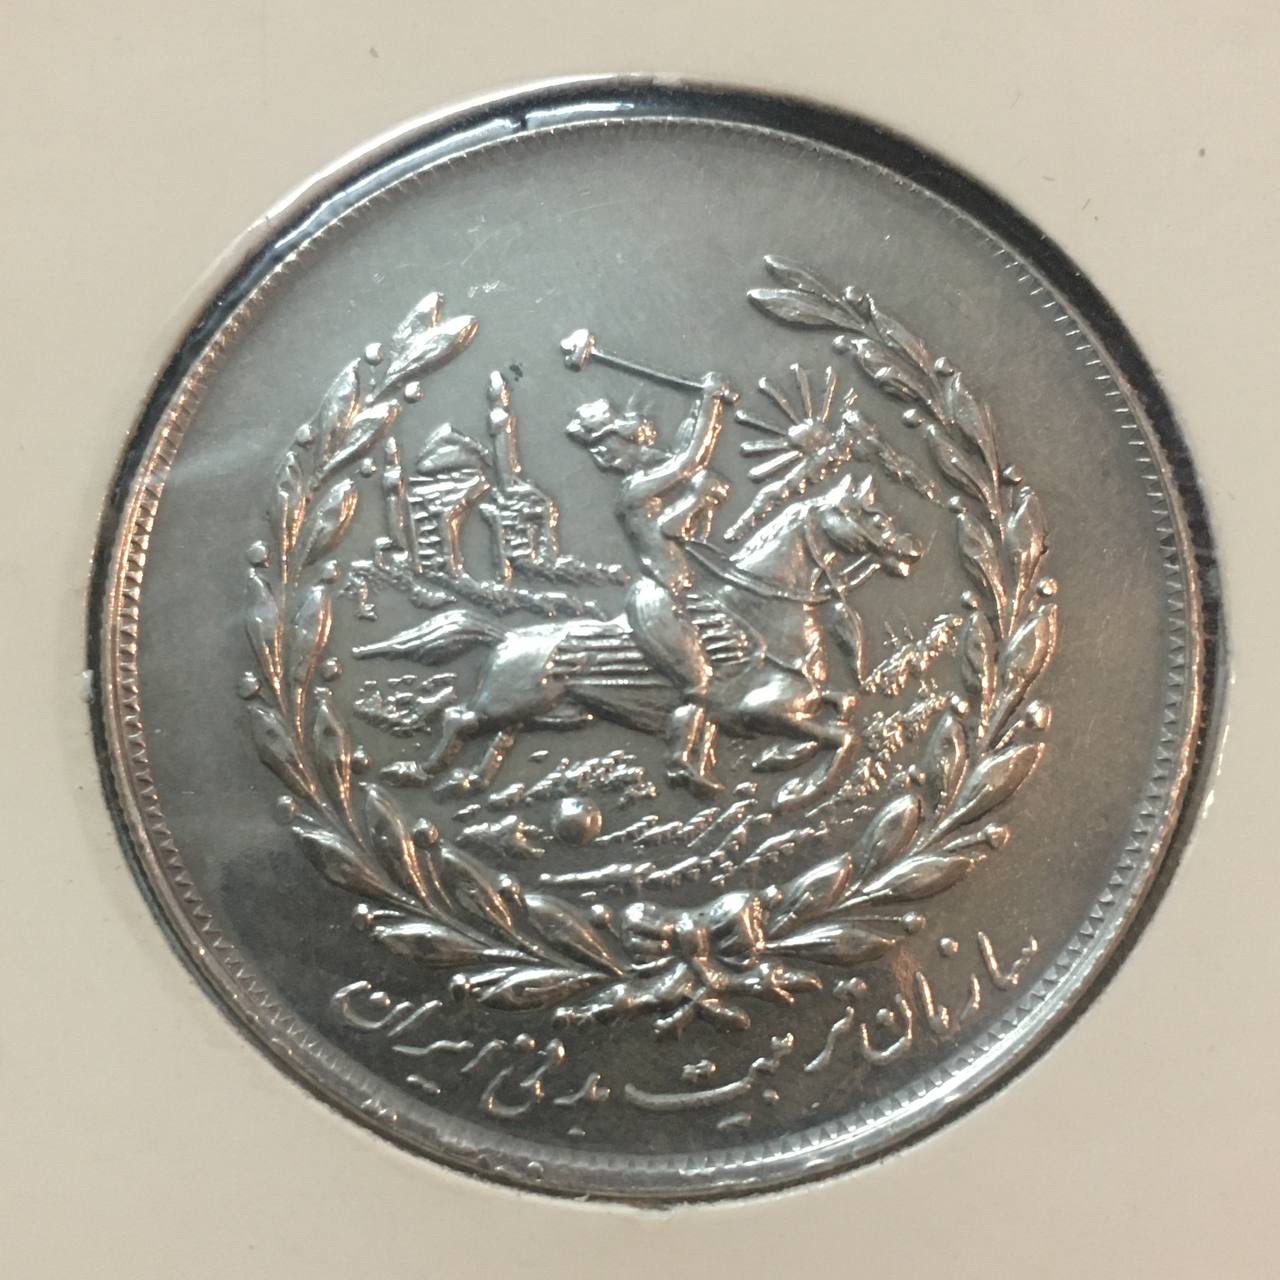 مدال چوگان یادبود نوروز ١٣۵۵ با تصویر محمد رضا شاه پهلوی و فرح دیبا زیبا و کمیاب با کیفیت بانکی